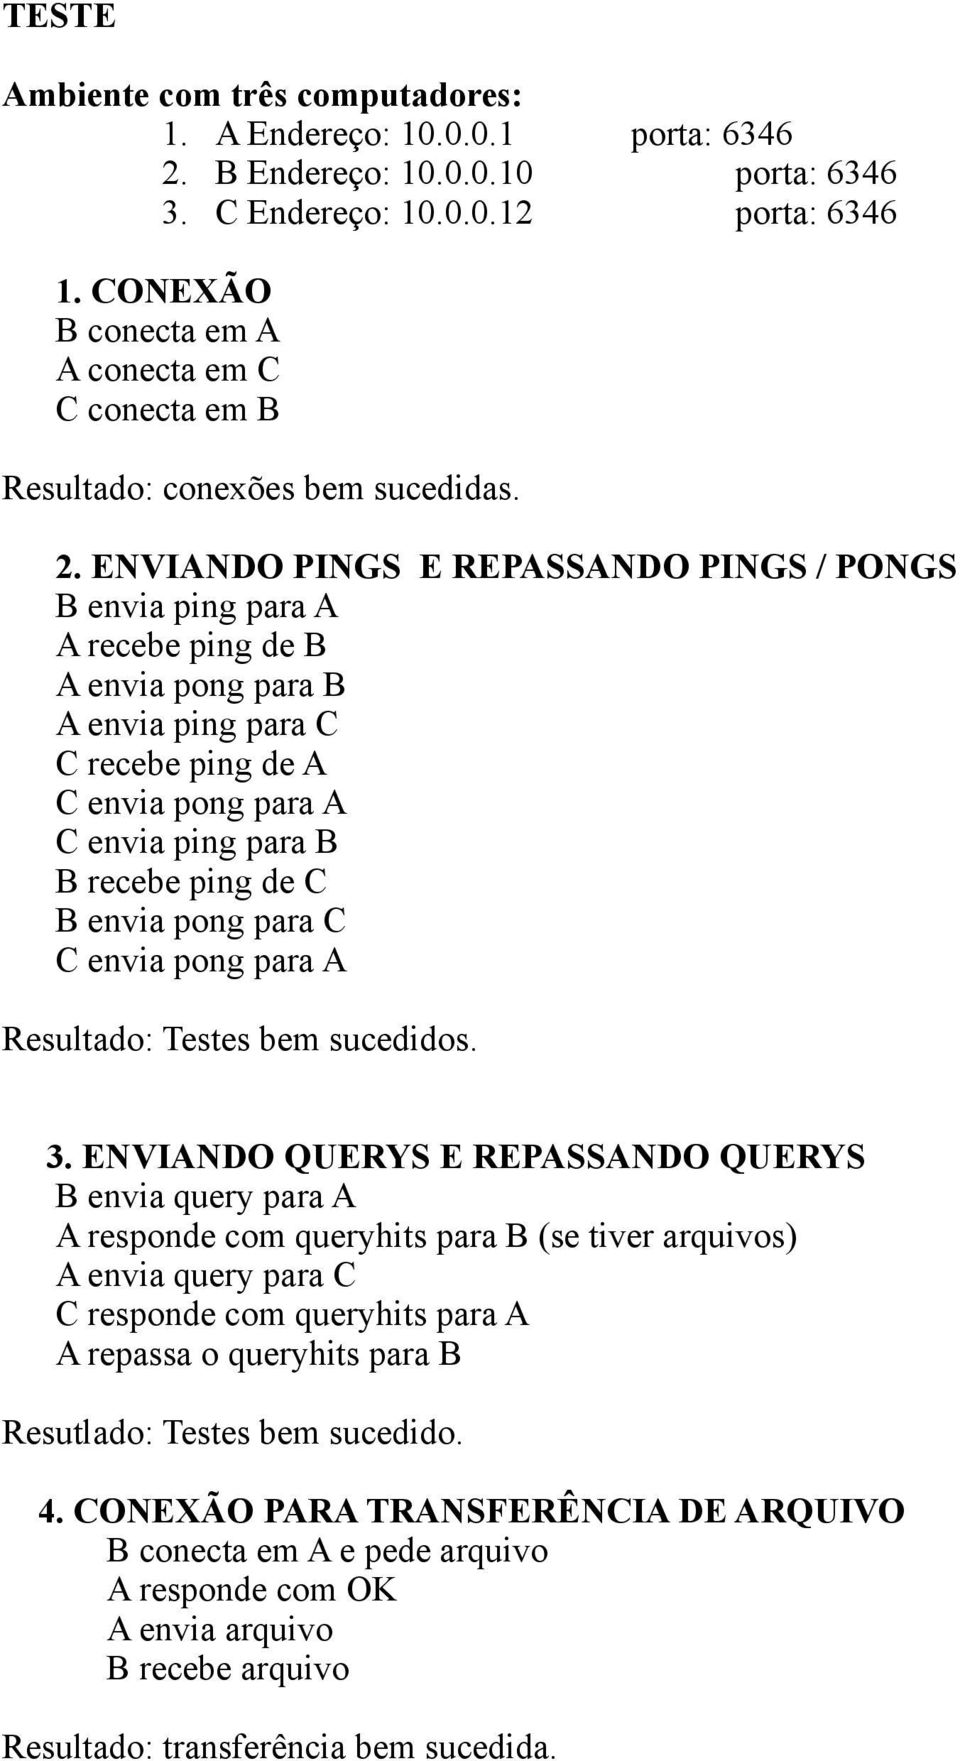 ENVIANDO PINGS E REPASSANDO PINGS / PONGS B envia ping para A A recebe ping de B A envia pong para B A envia ping para C C recebe ping de A C envia pong para A C envia ping para B B recebe ping de C